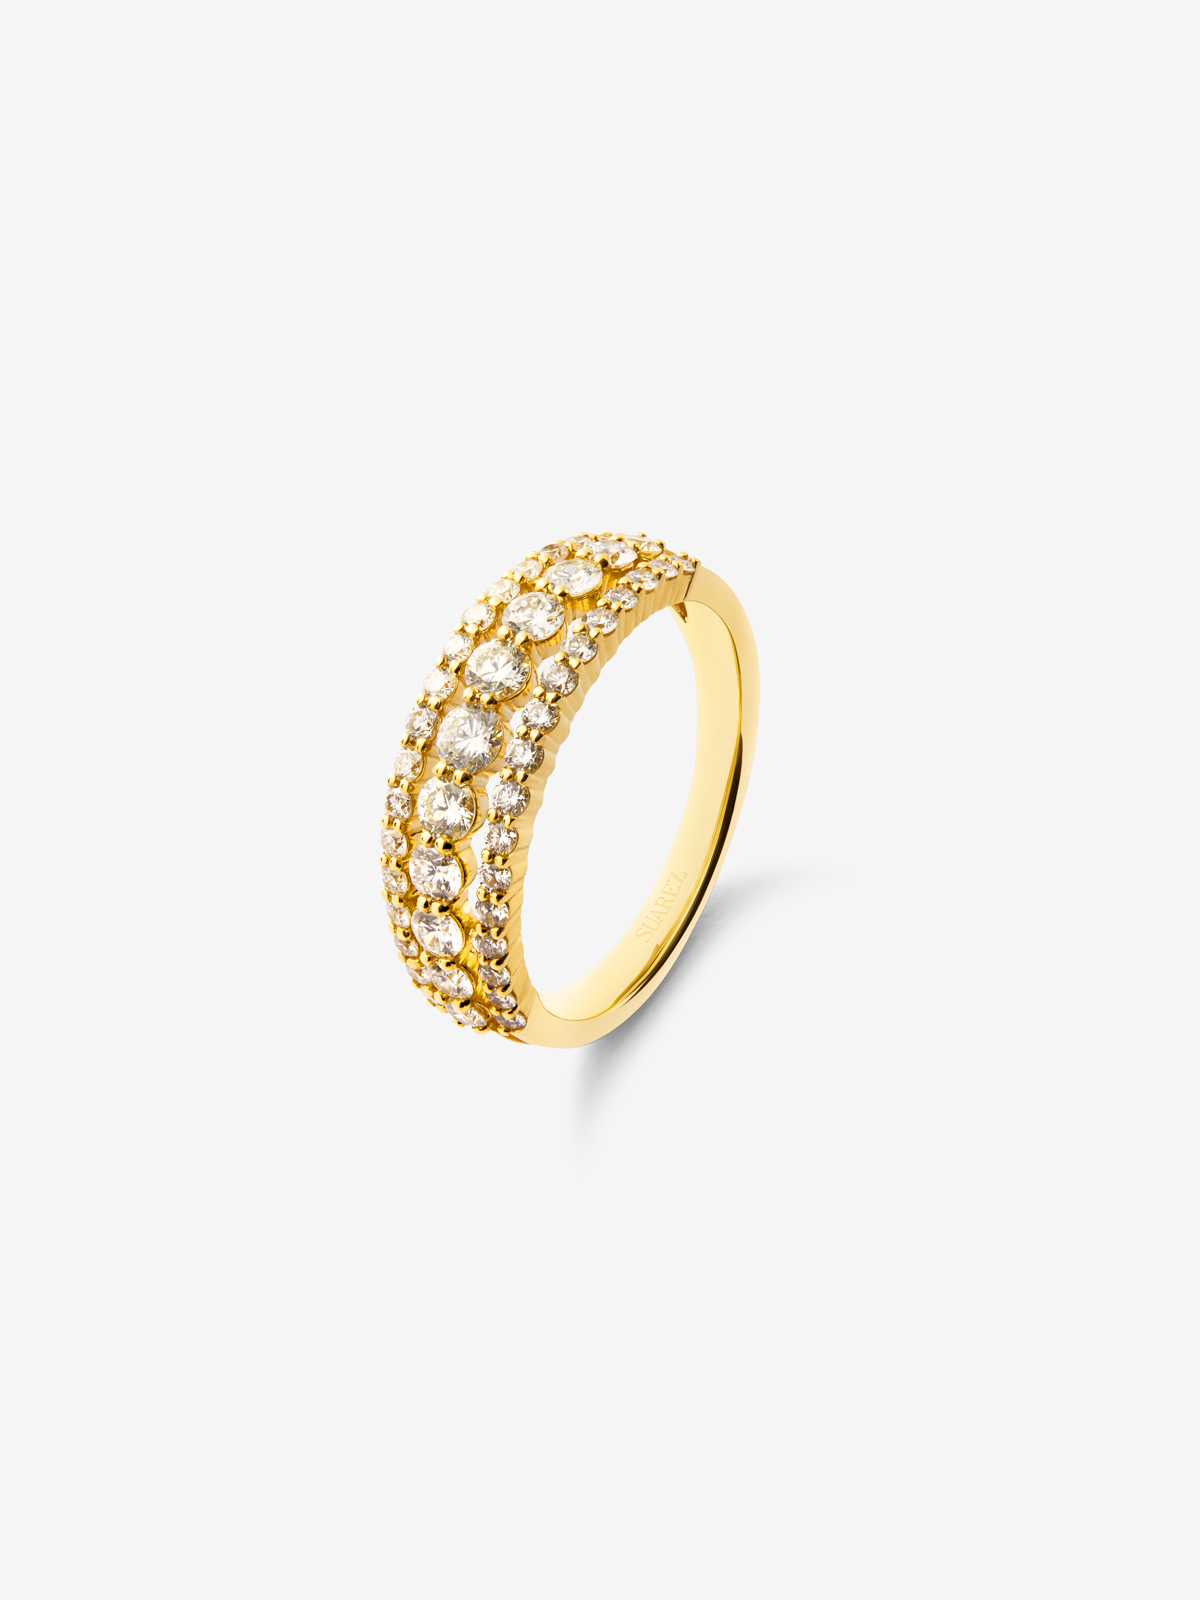 Anillo triple de oro amarillo de 18K con diamantes blancos en talla brillante de 0,97 cts